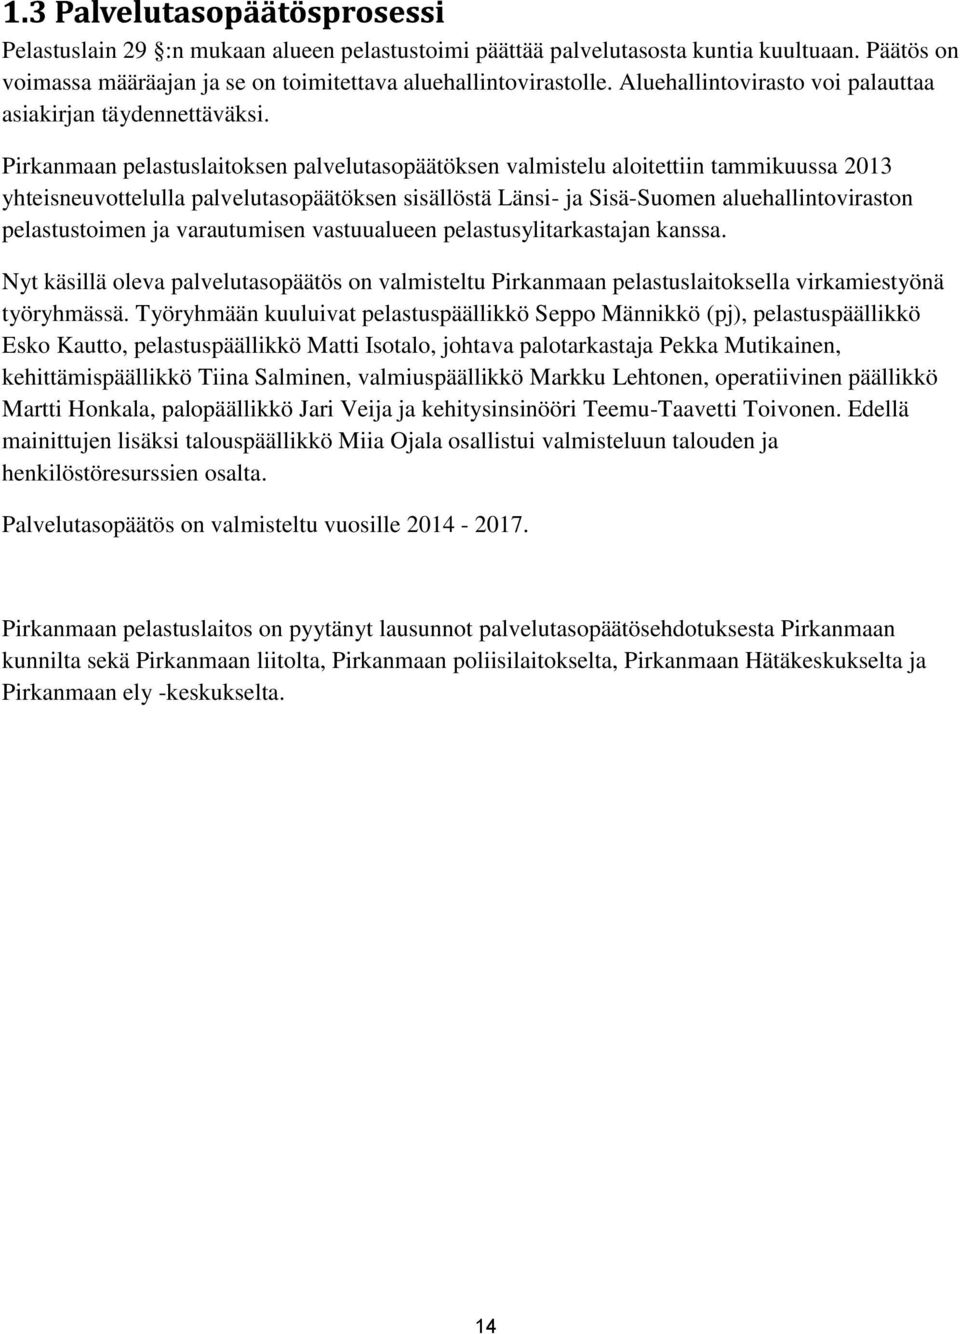 Pirkanmaan pelastuslaitoksen palvelutasopäätöksen valmistelu aloitettiin tammikuussa 2013 yhteisneuvottelulla palvelutasopäätöksen sisällöstä Länsi- ja Sisä-Suomen aluehallintoviraston pelastustoimen